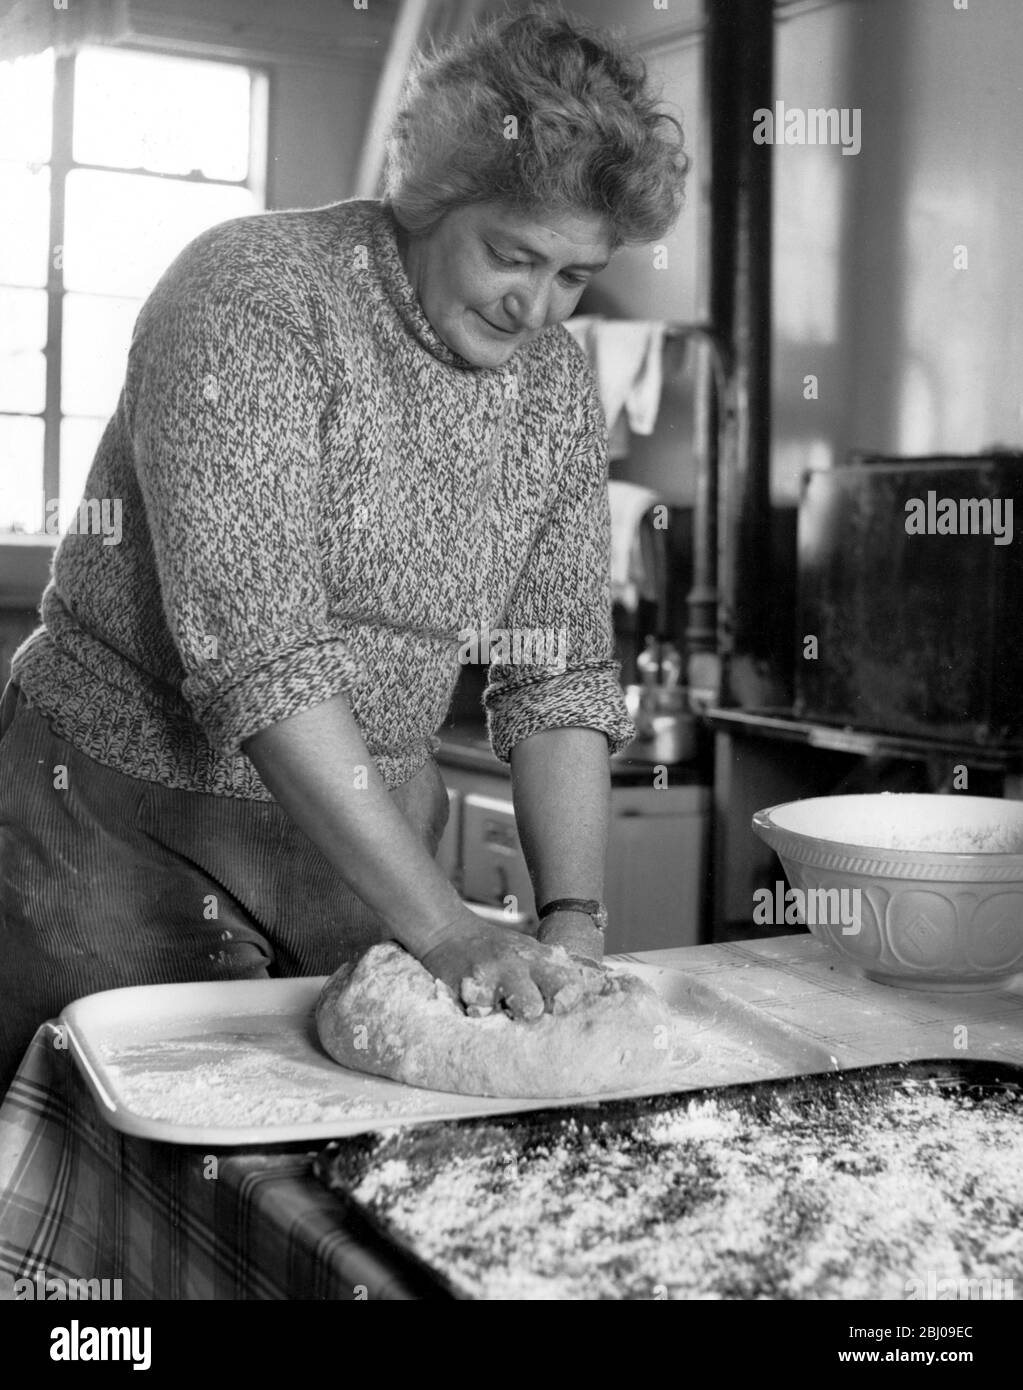 Britains Loneliest Island beschäftigt von der Observatory Trust für Personal und Besucher Pat hat die Küche in diesem Bild zu tun ist Backen und Vorbereitung Brot 22 Juli 1957 Stockfoto